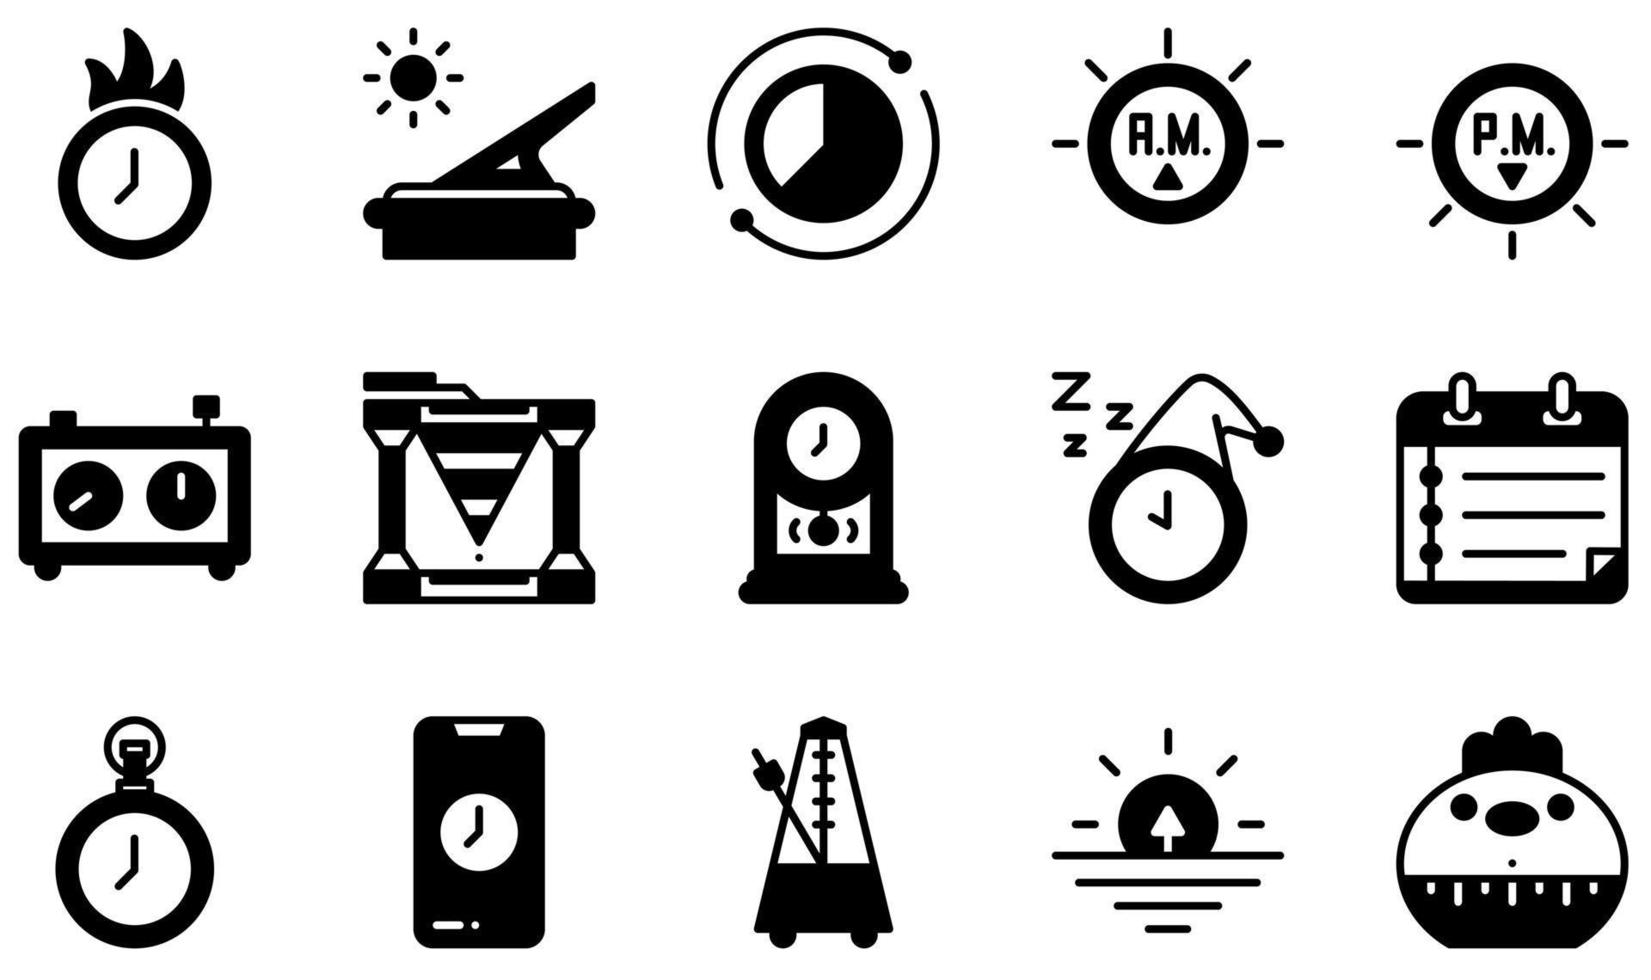 Relógio e conjunto de ícones de equipamento de tempo de relógio